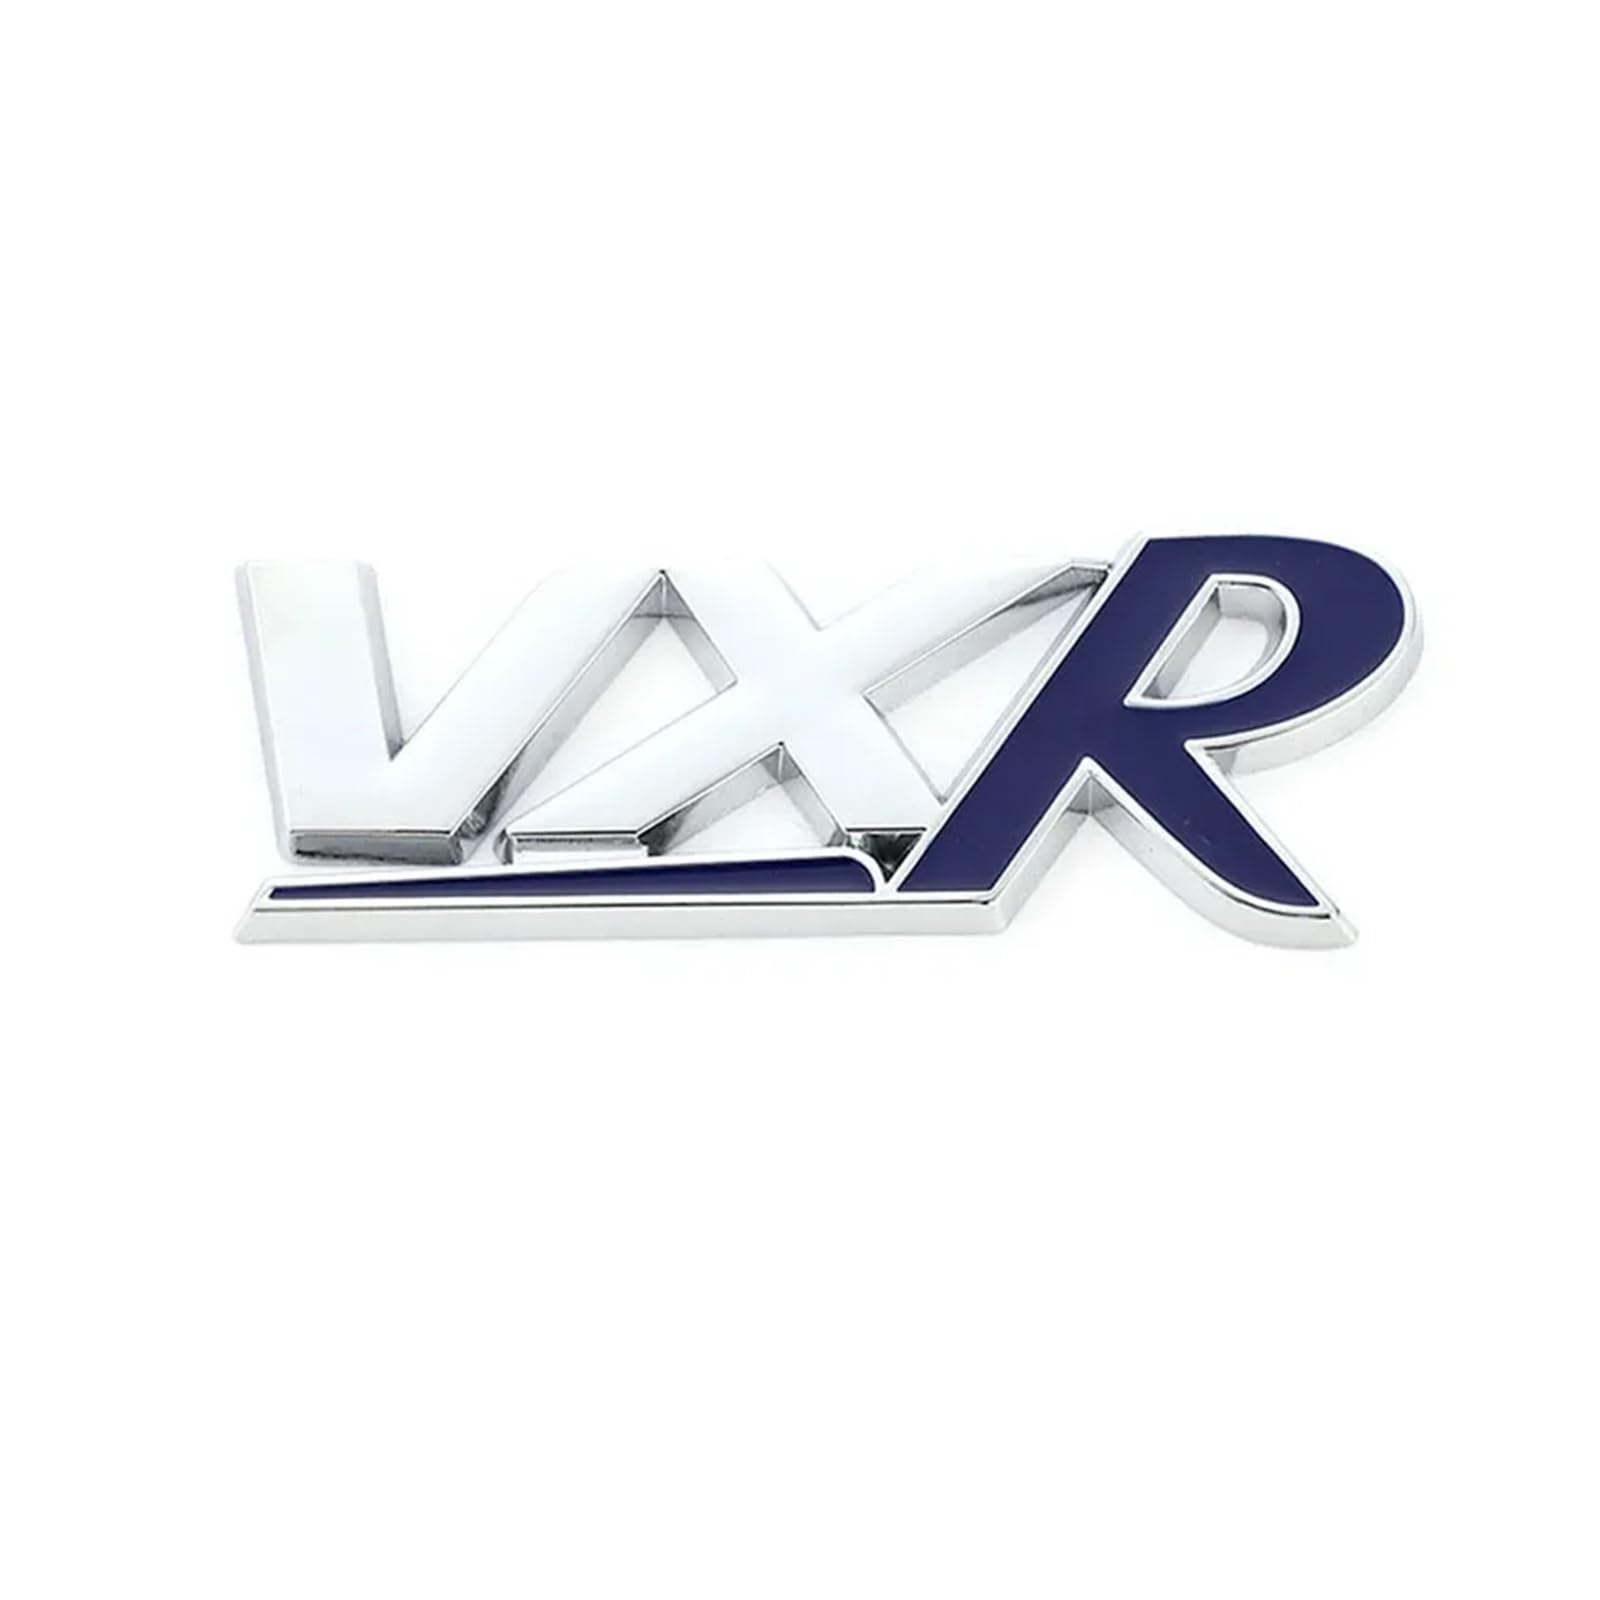 YSRWTBBA 3D-Metall-VXR-Logo, Auto-Frontgrill, Heckkofferraum-Emblem, Aufkleber, kompatibel mit Insignia Zafira Corsa D Astra HJ VXR, einfach abziehen und abzi(Emblem sticker) von YSRWTBBA